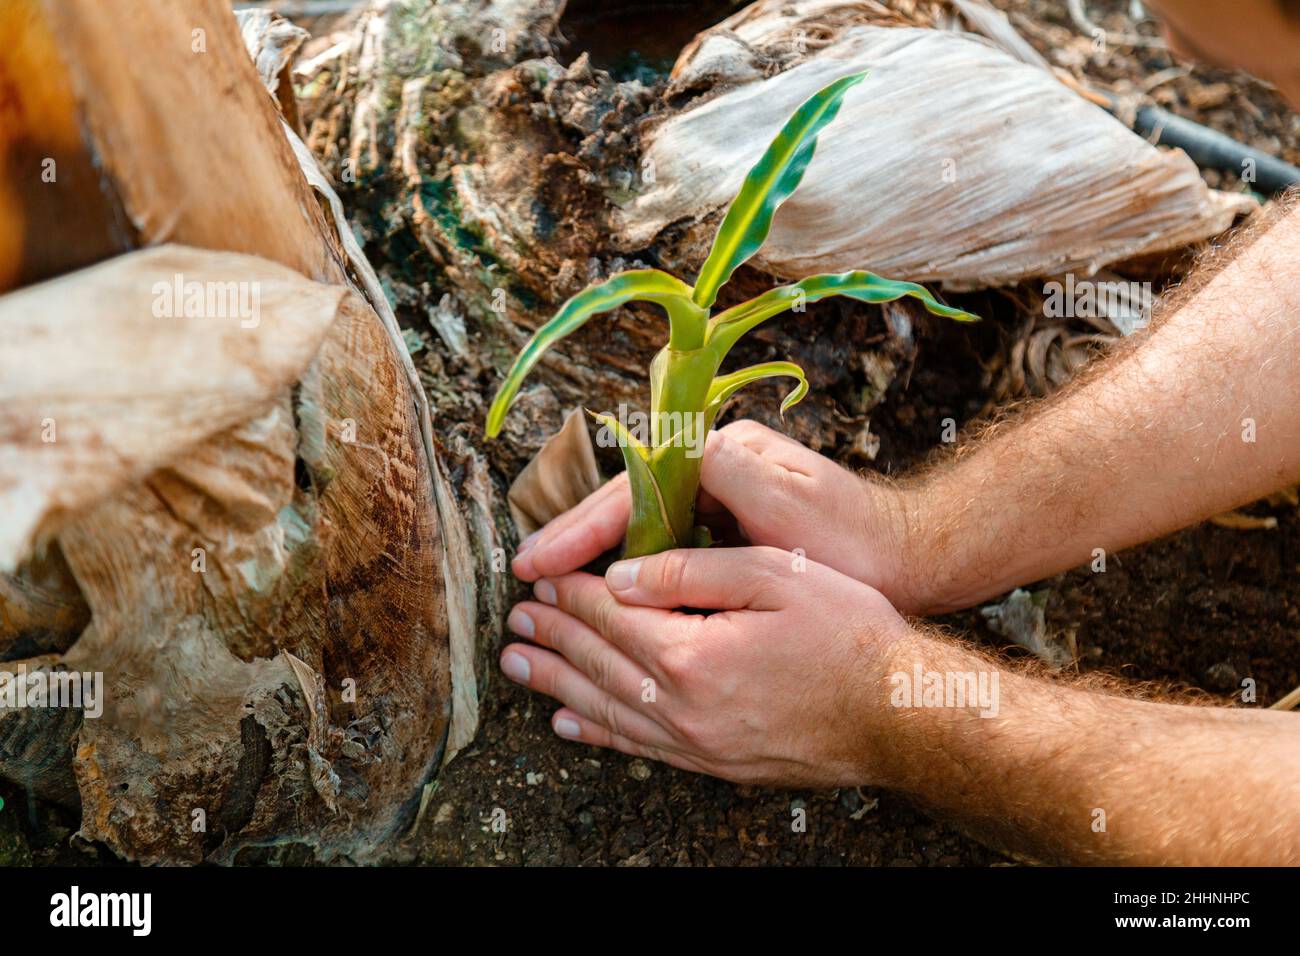 Jeune sprout frais dans les mains des hommes.L'homme plante un germe frais dans un sol ouvert comme un symbole de l'énergie verte redémarrer la terre Nouvelle vie.CONCEPT D'ÉCO-agriculture Banque D'Images